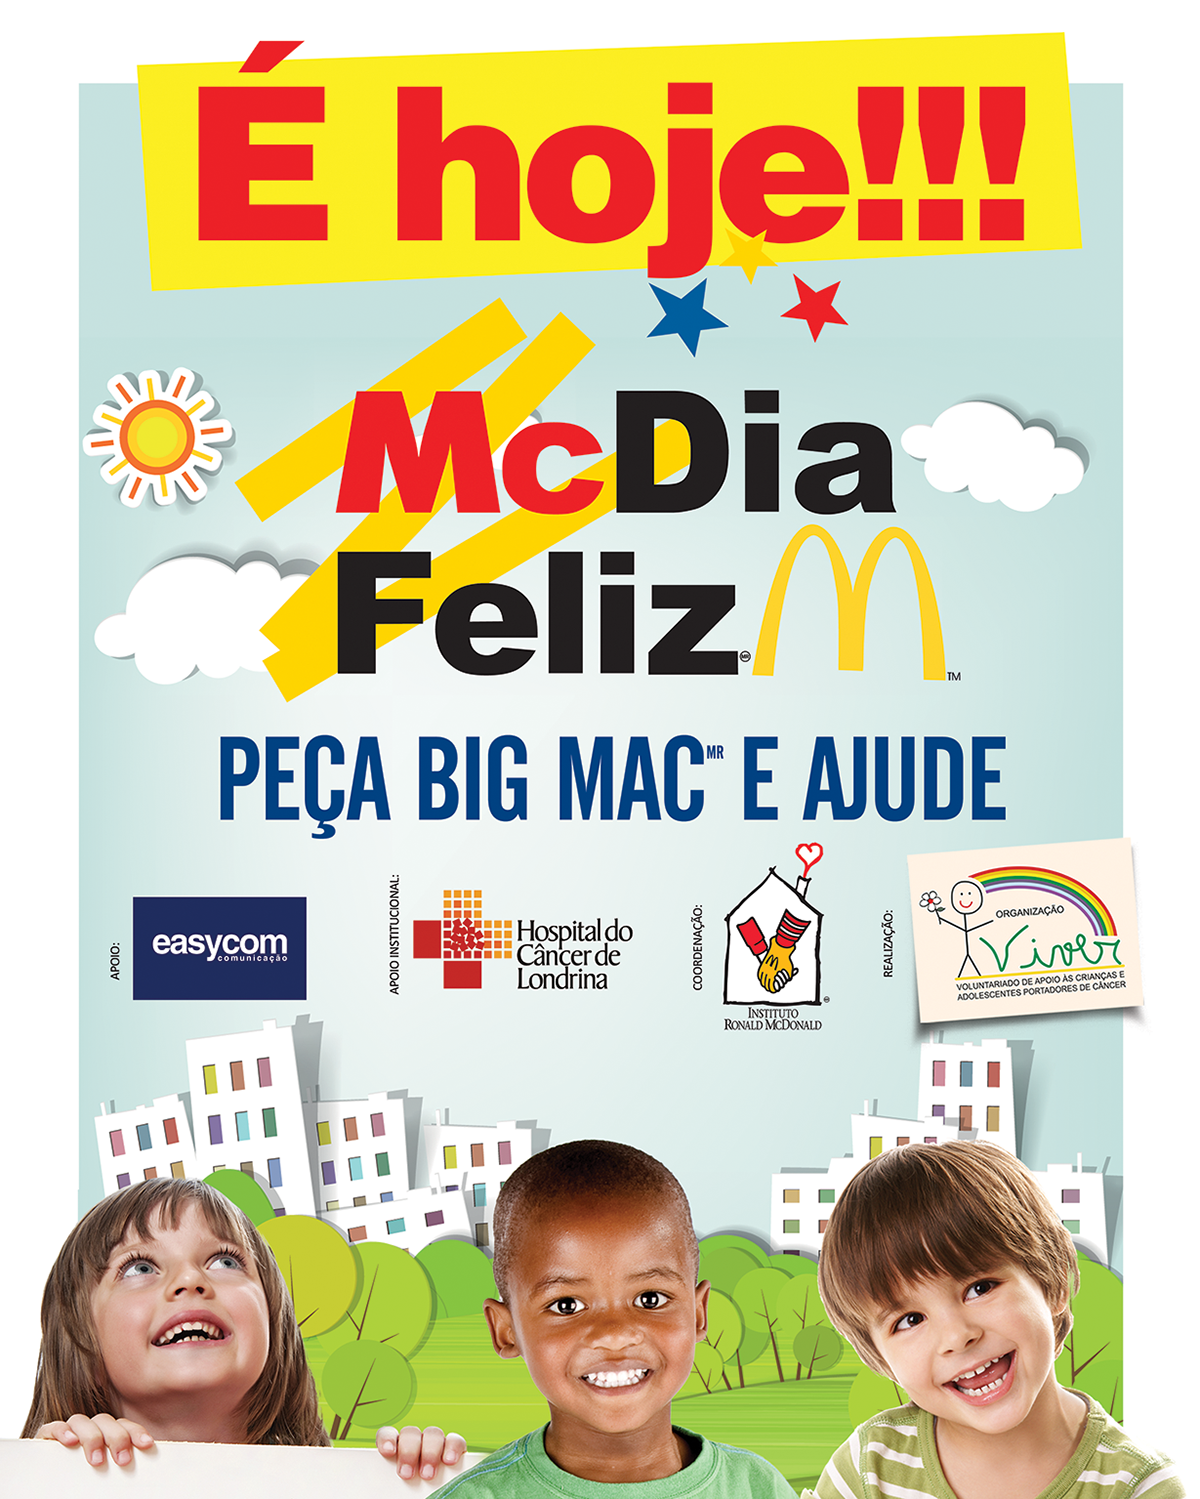 mc dia feliz McDonalds Ong Viver Londrina Easycom Londrina big mac solidario londrina Outdoor Projeto Sorrir Hospital do Câncer